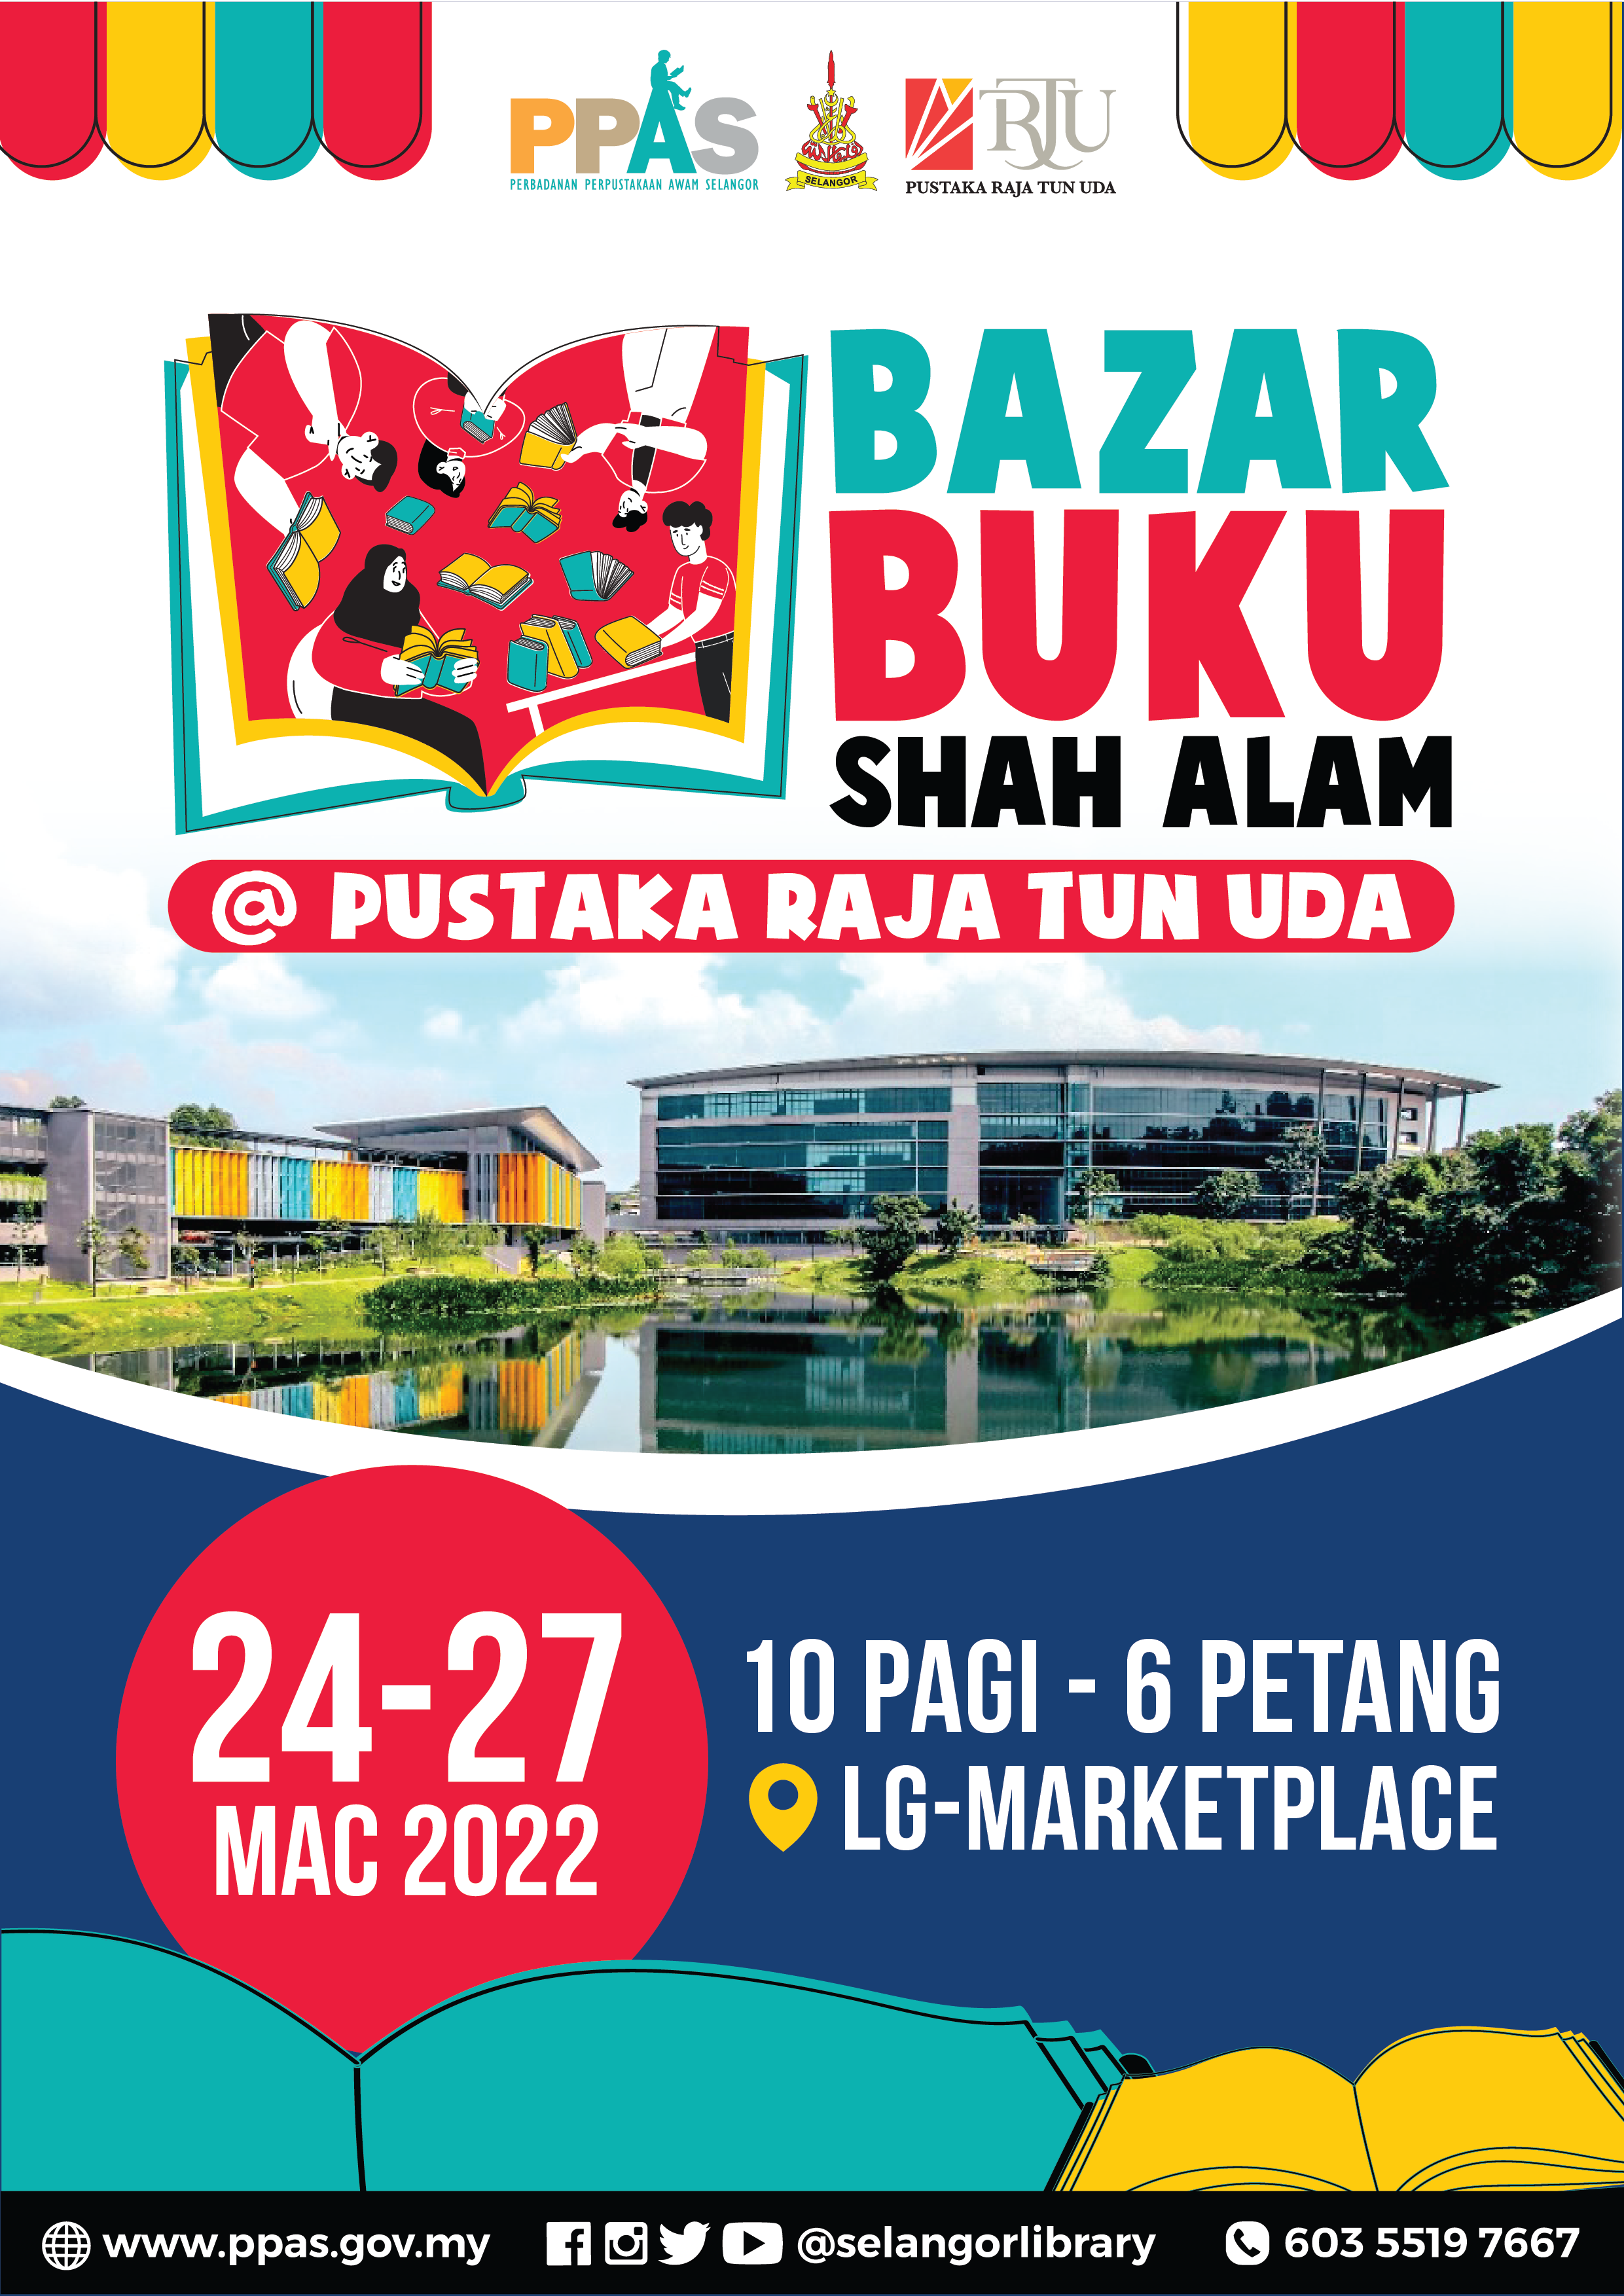 Bazar Buku Shah Alam 2022